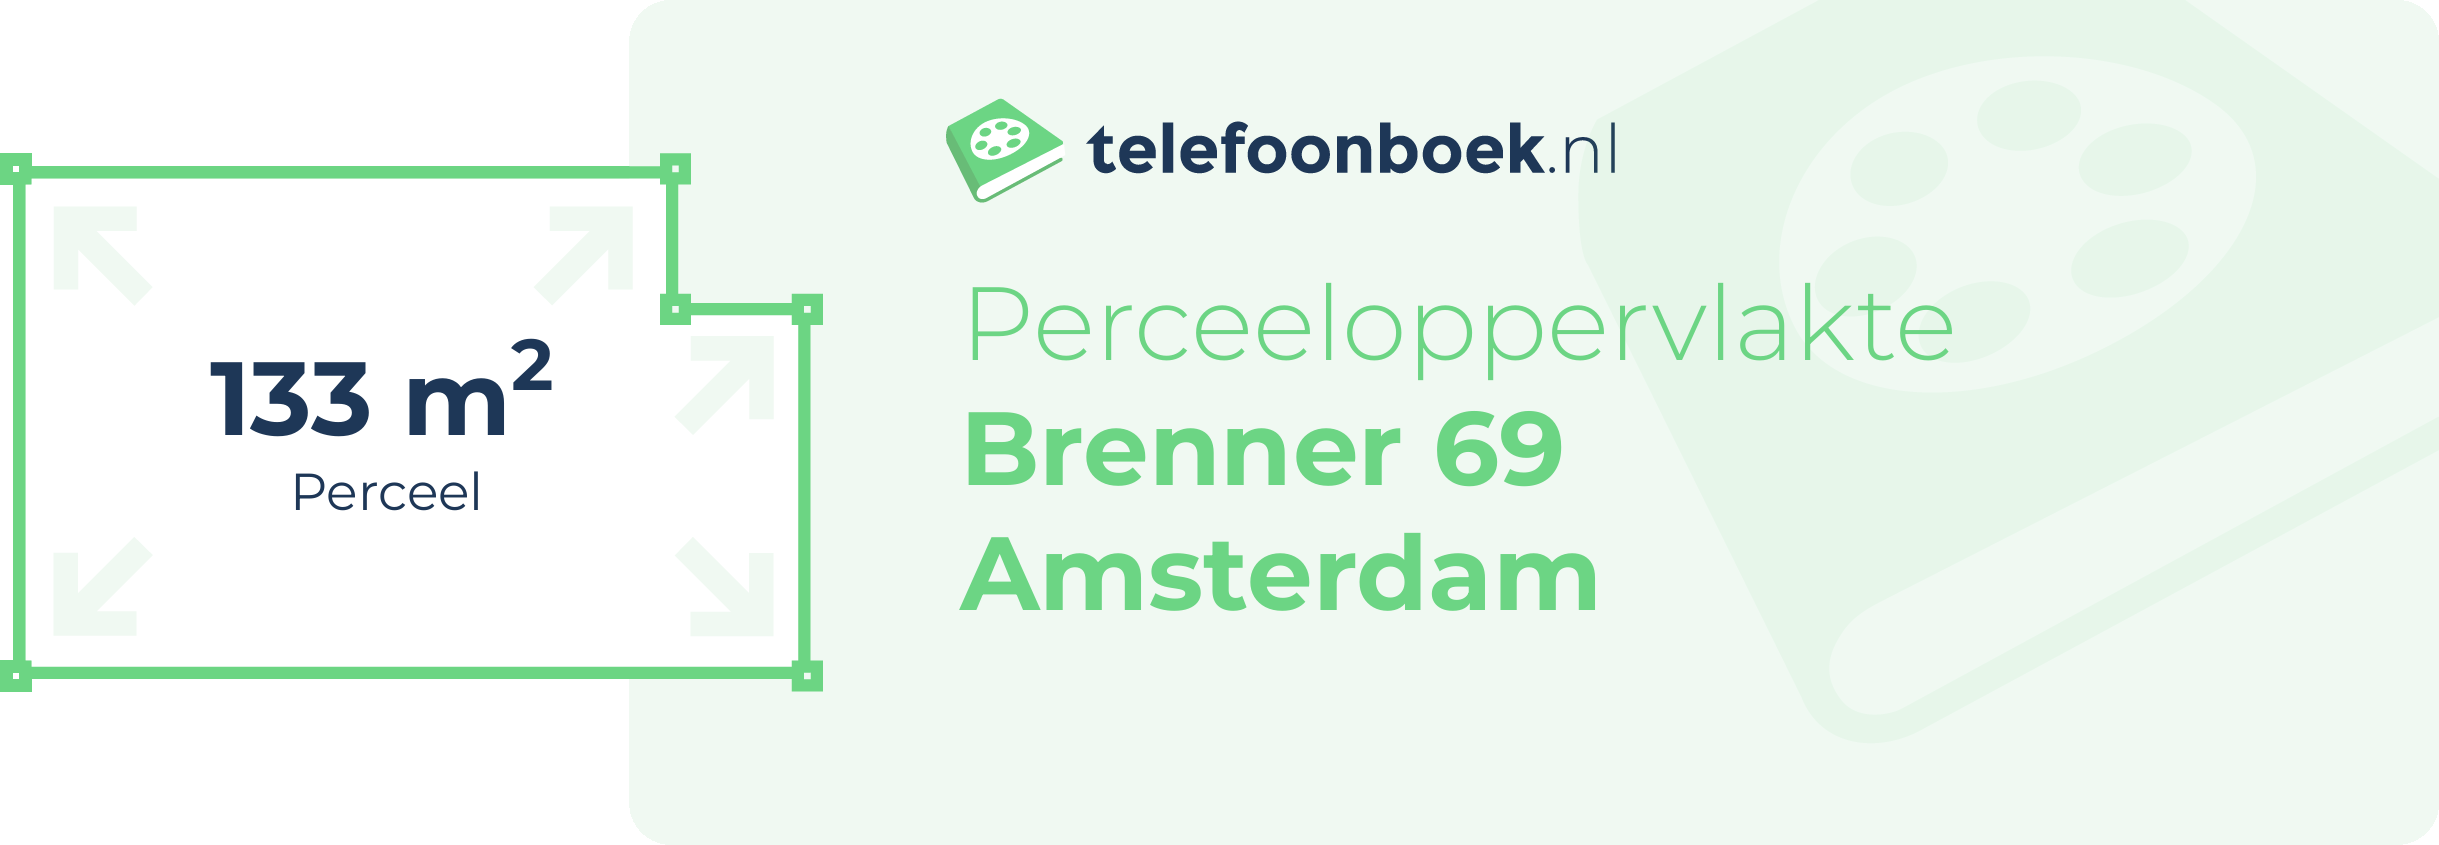 Perceeloppervlakte Brenner 69 Amsterdam